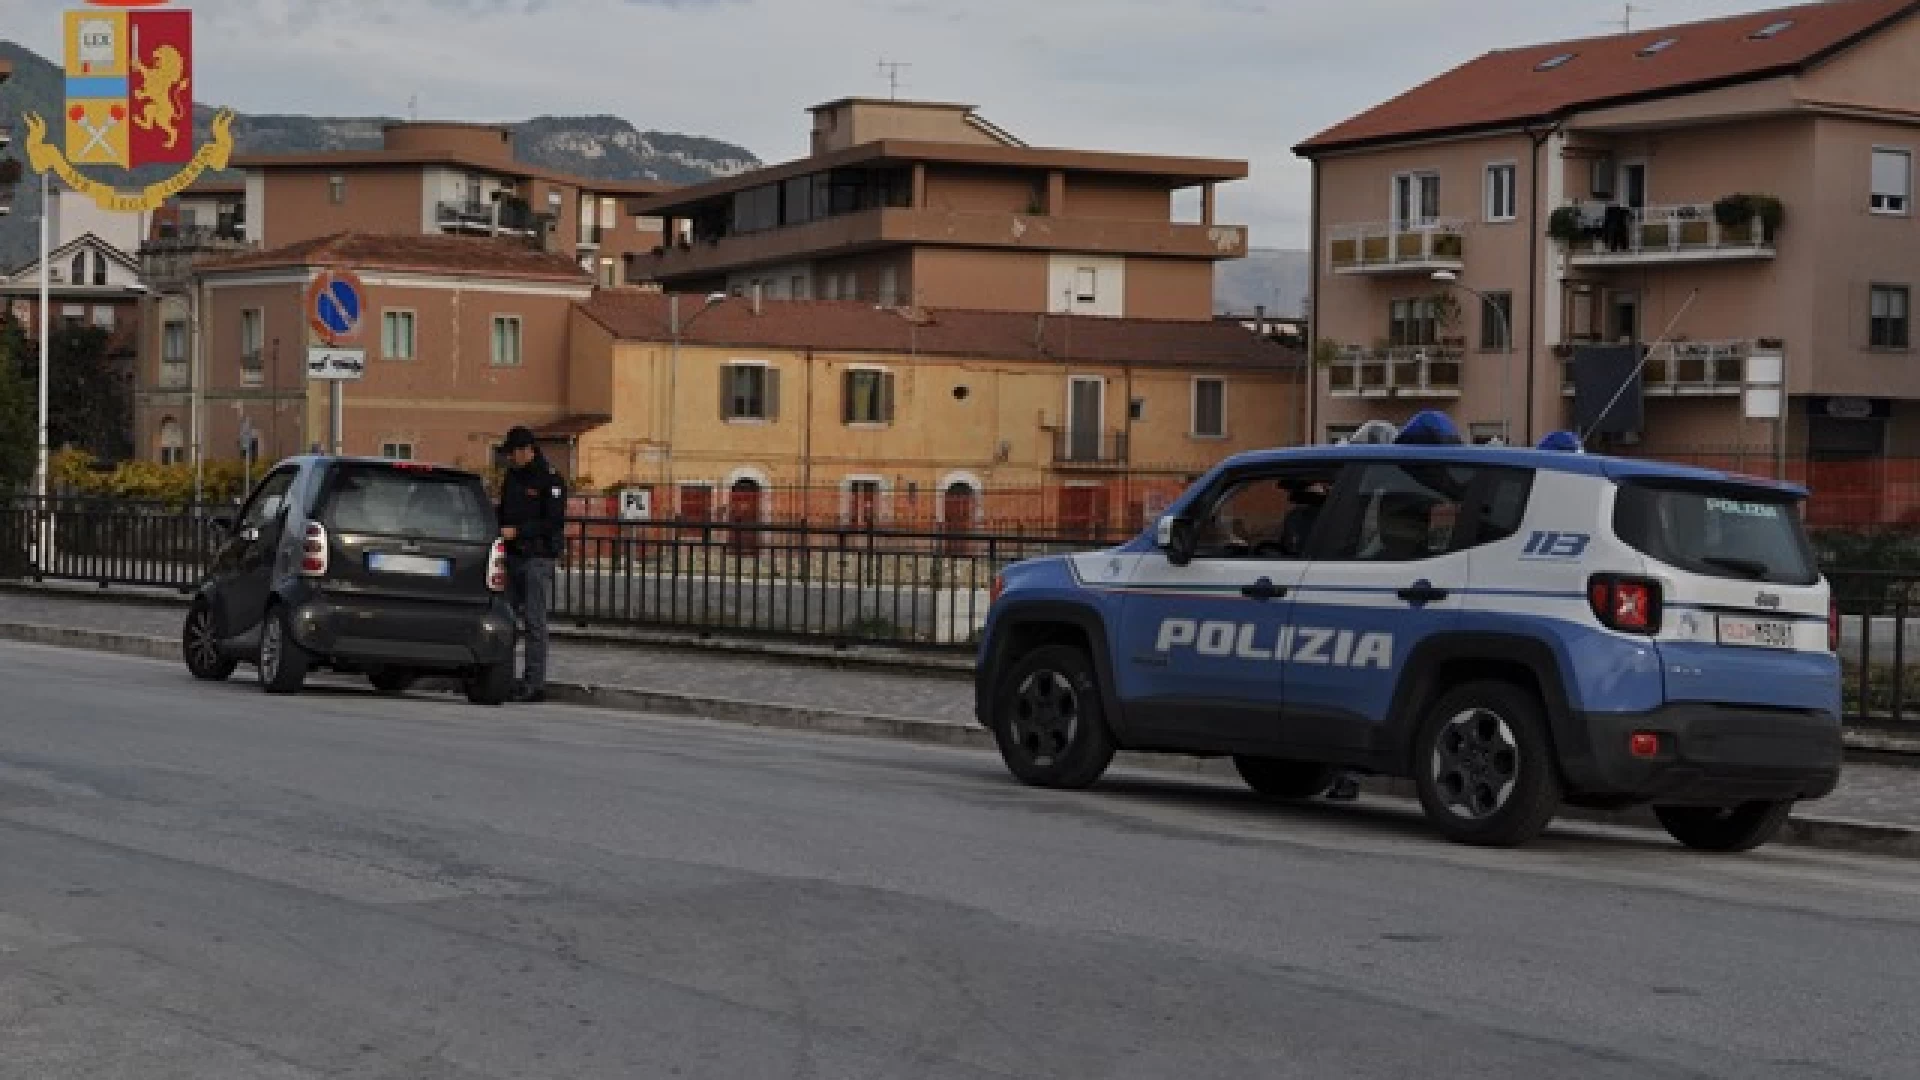 Isernia: la Polizia ferma due pregiudicati. Uno aveva obbligo di dimora a Napoli. Guarda il video della Questura.